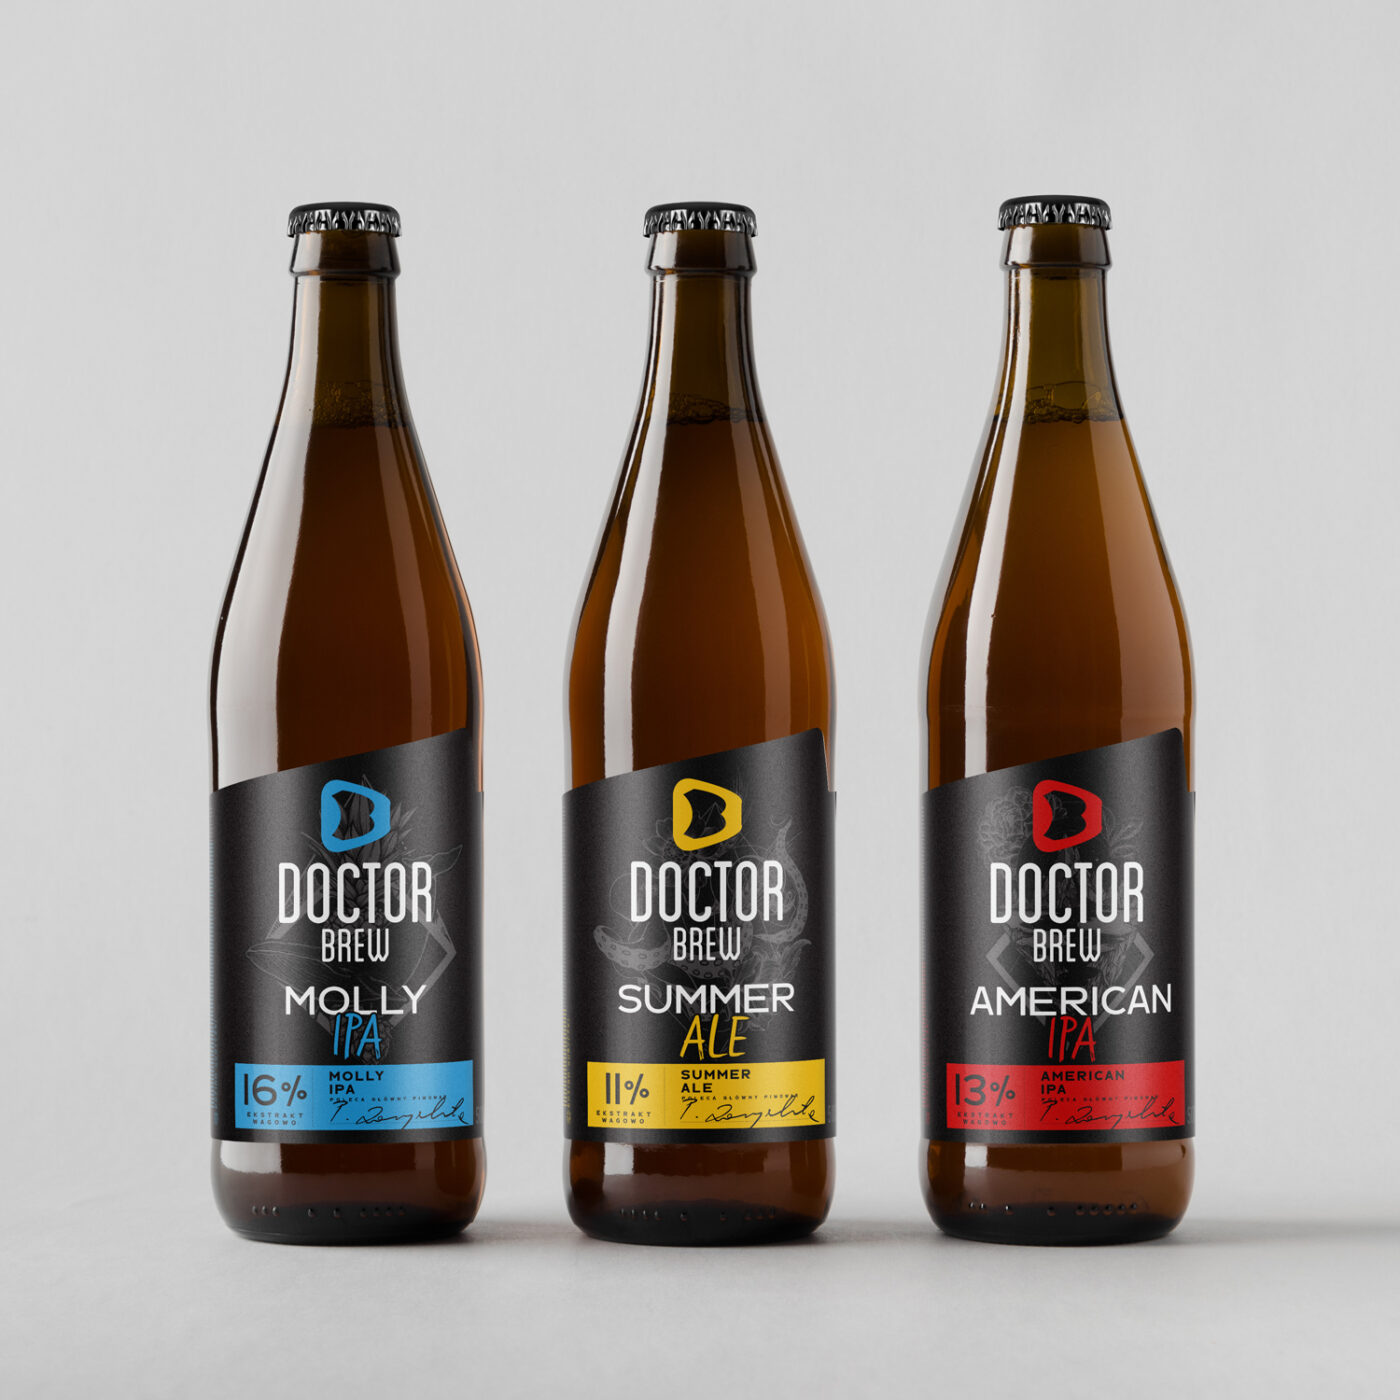 Projekt Craft beers label design